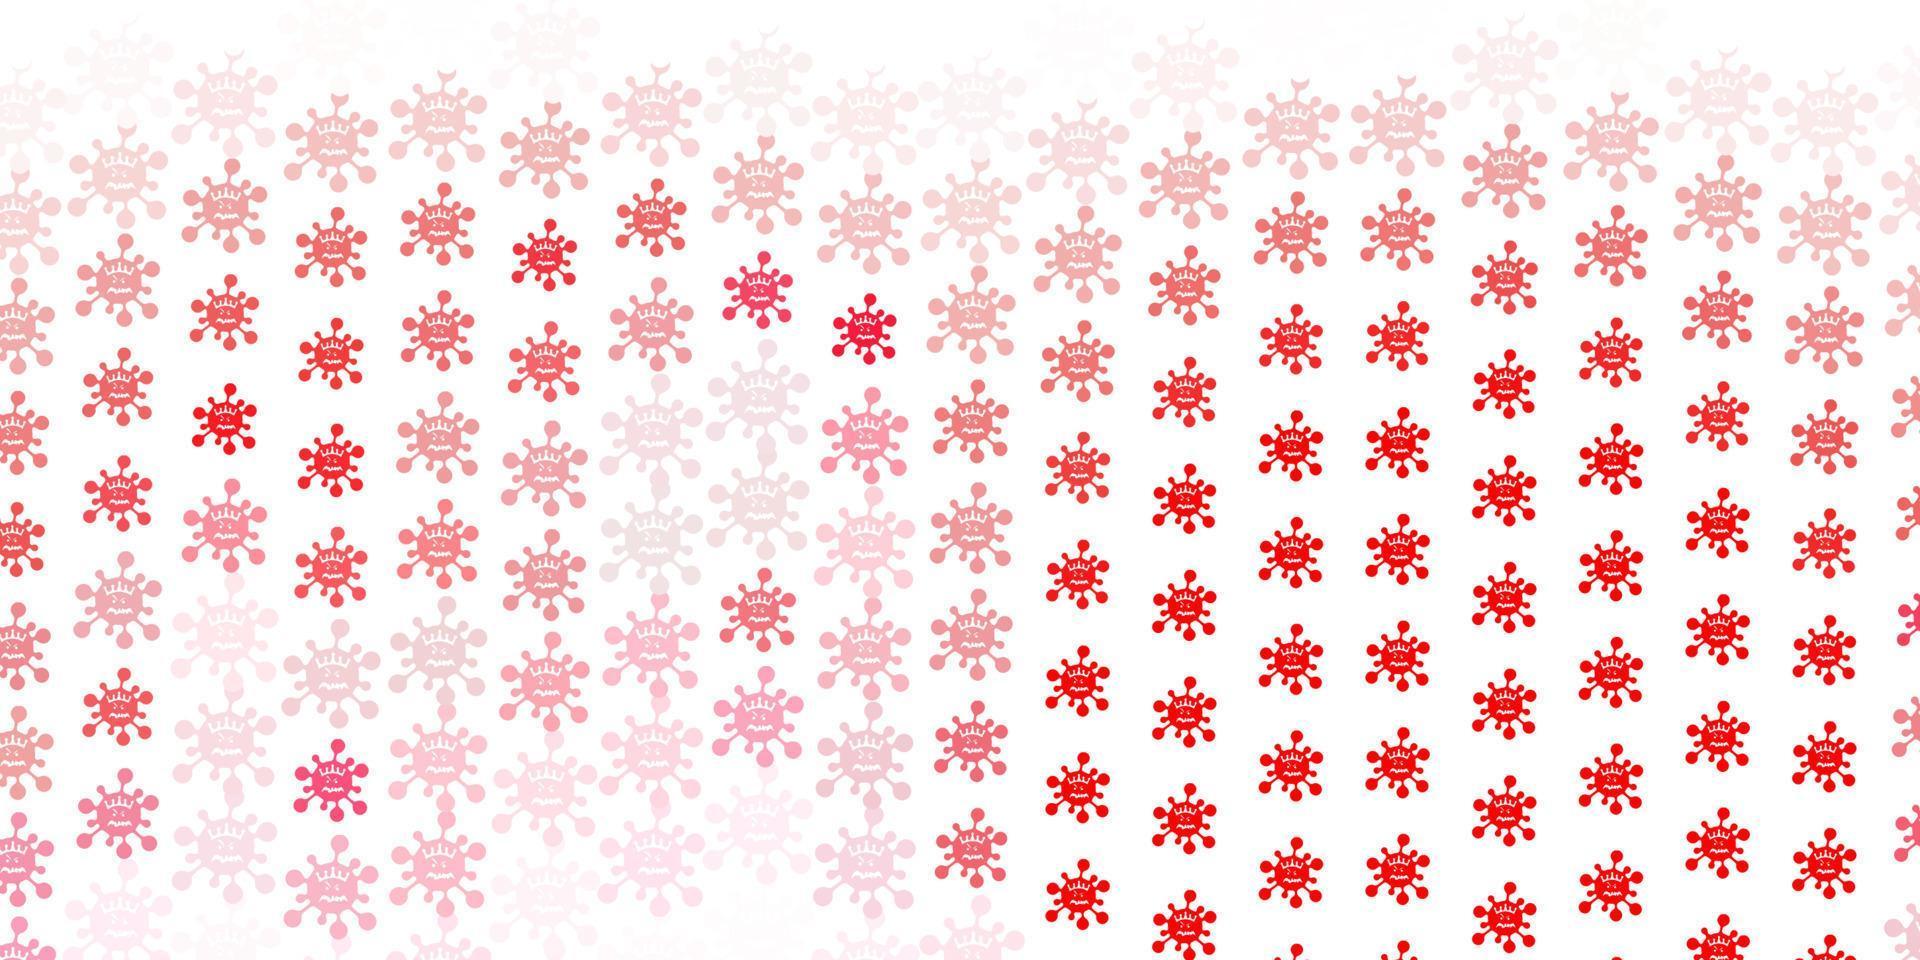 sfondo vettoriale rosso chiaro con simboli di virus.